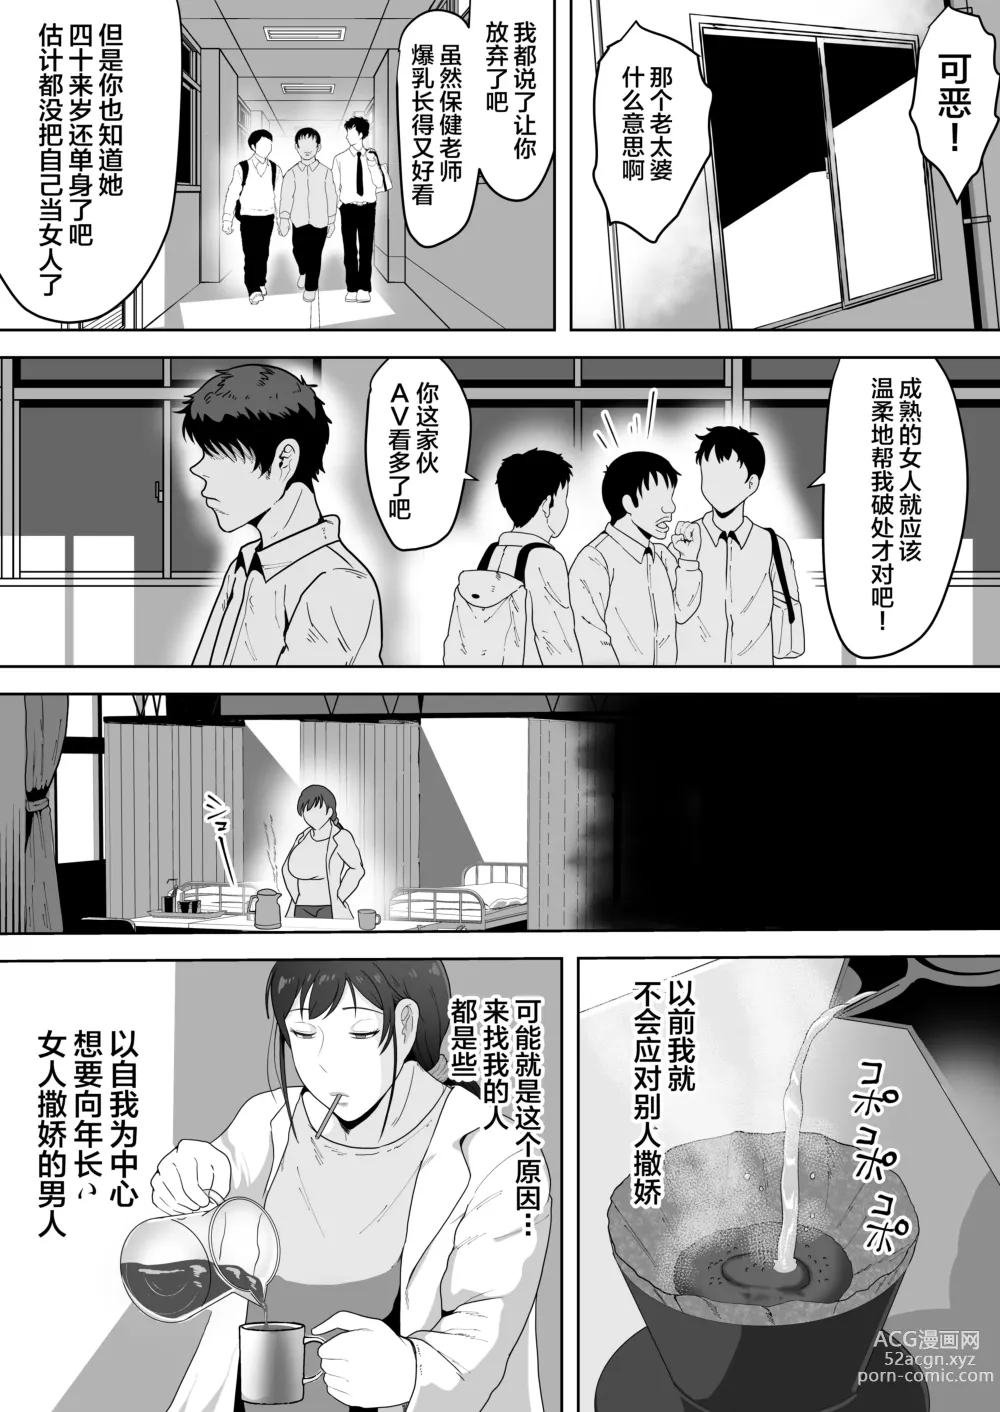 Page 3 of doujinshi Hoken no Sensei Shinobu 37-sai